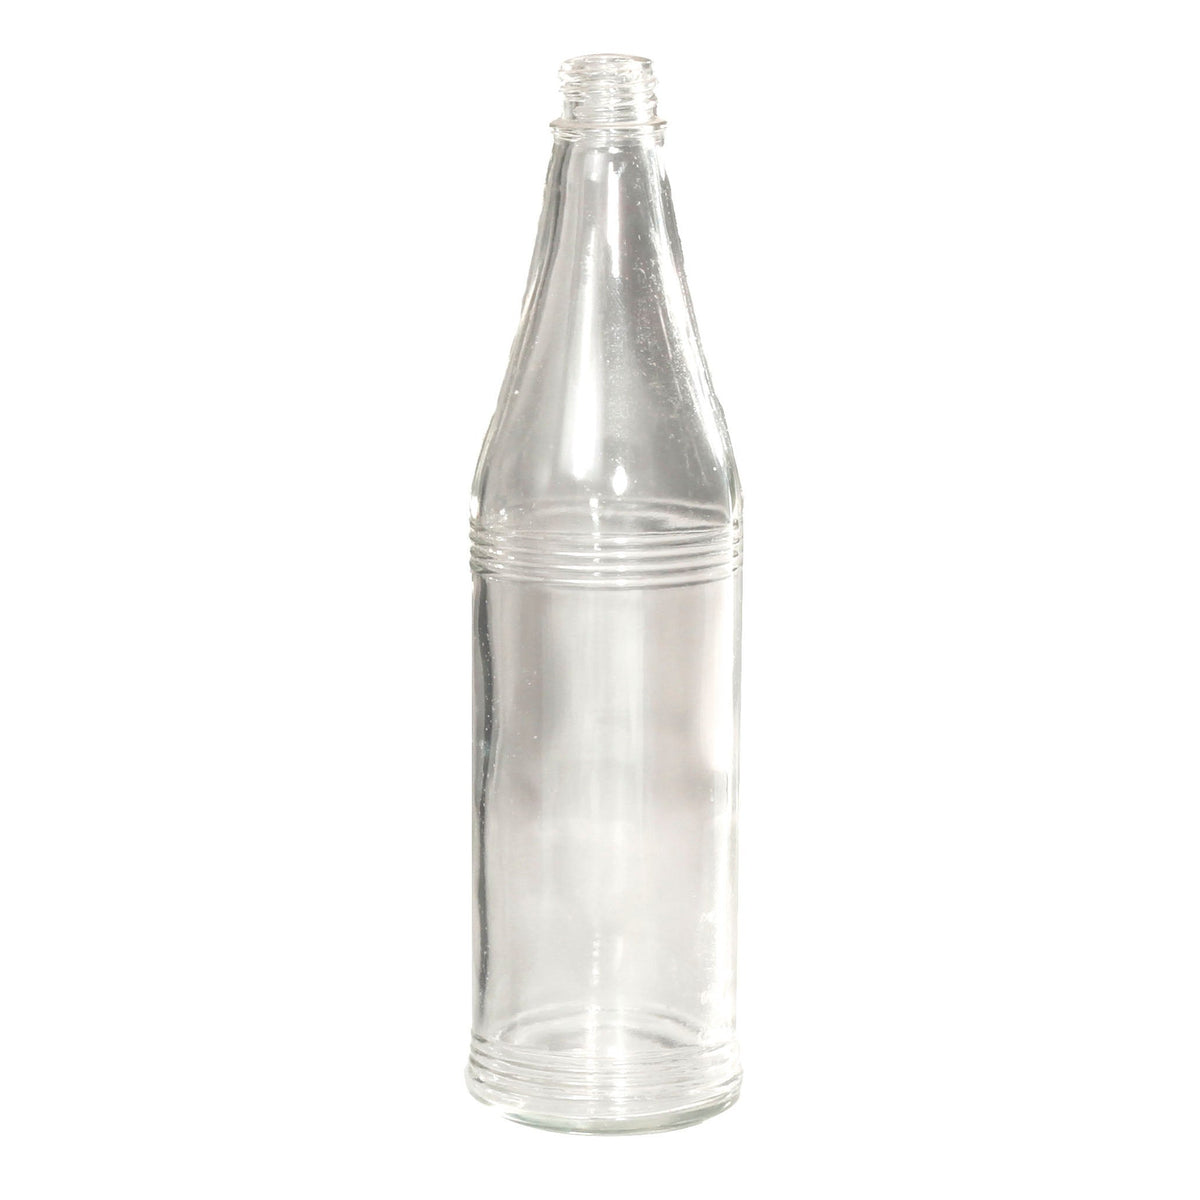 SMASHProps Breakaway Sauce Shaker Bottle Prop - Clear - Clear